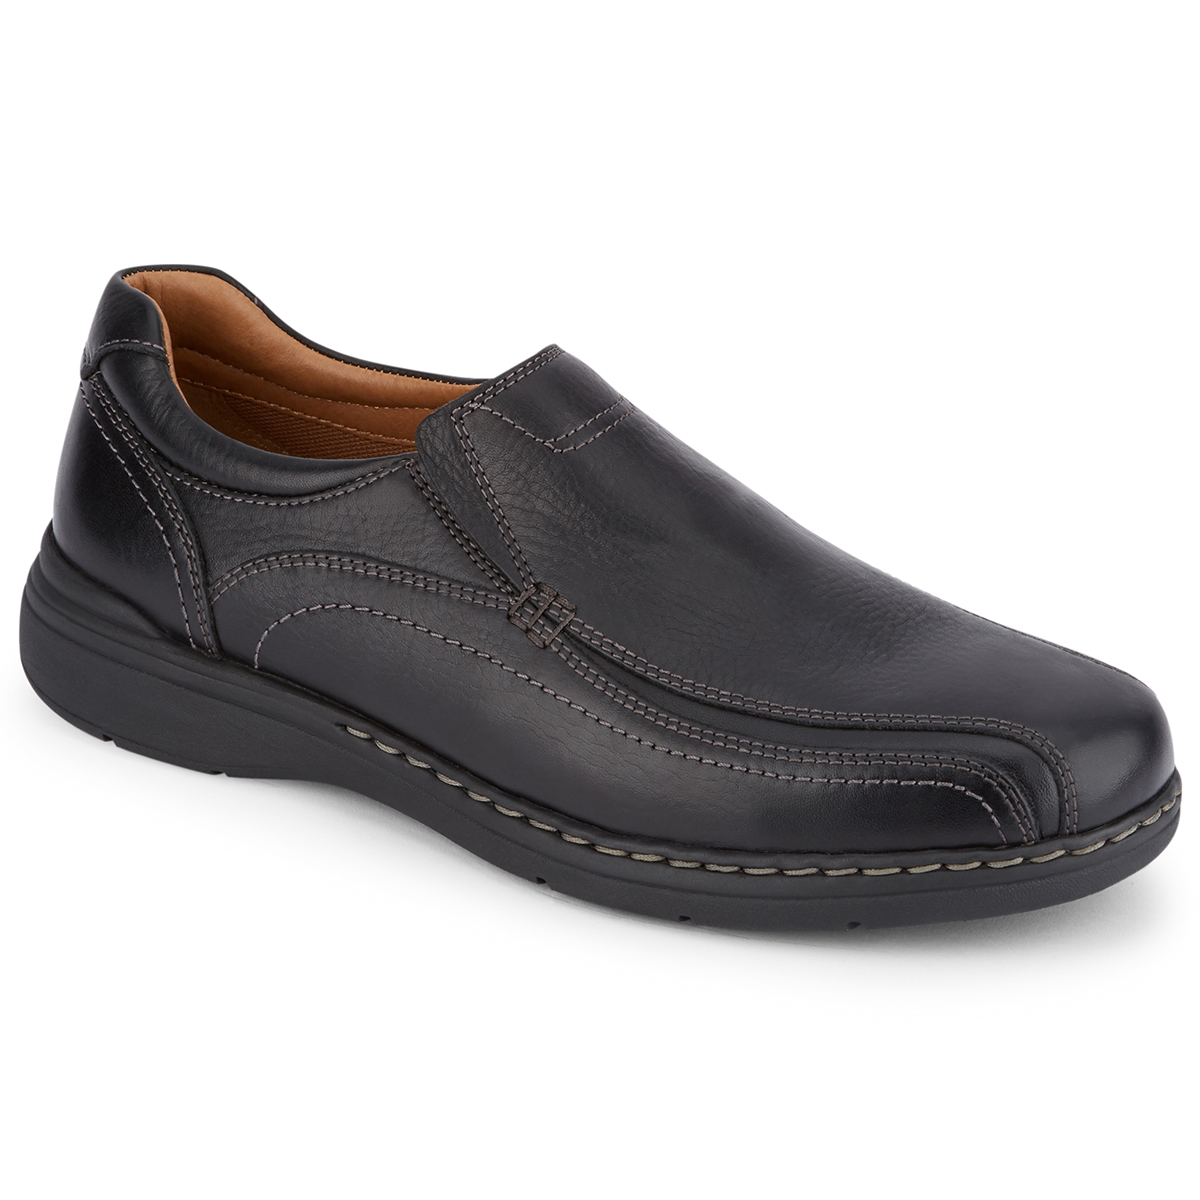 Dockers Men's Mosley Slip-On Shoe - Black, 8